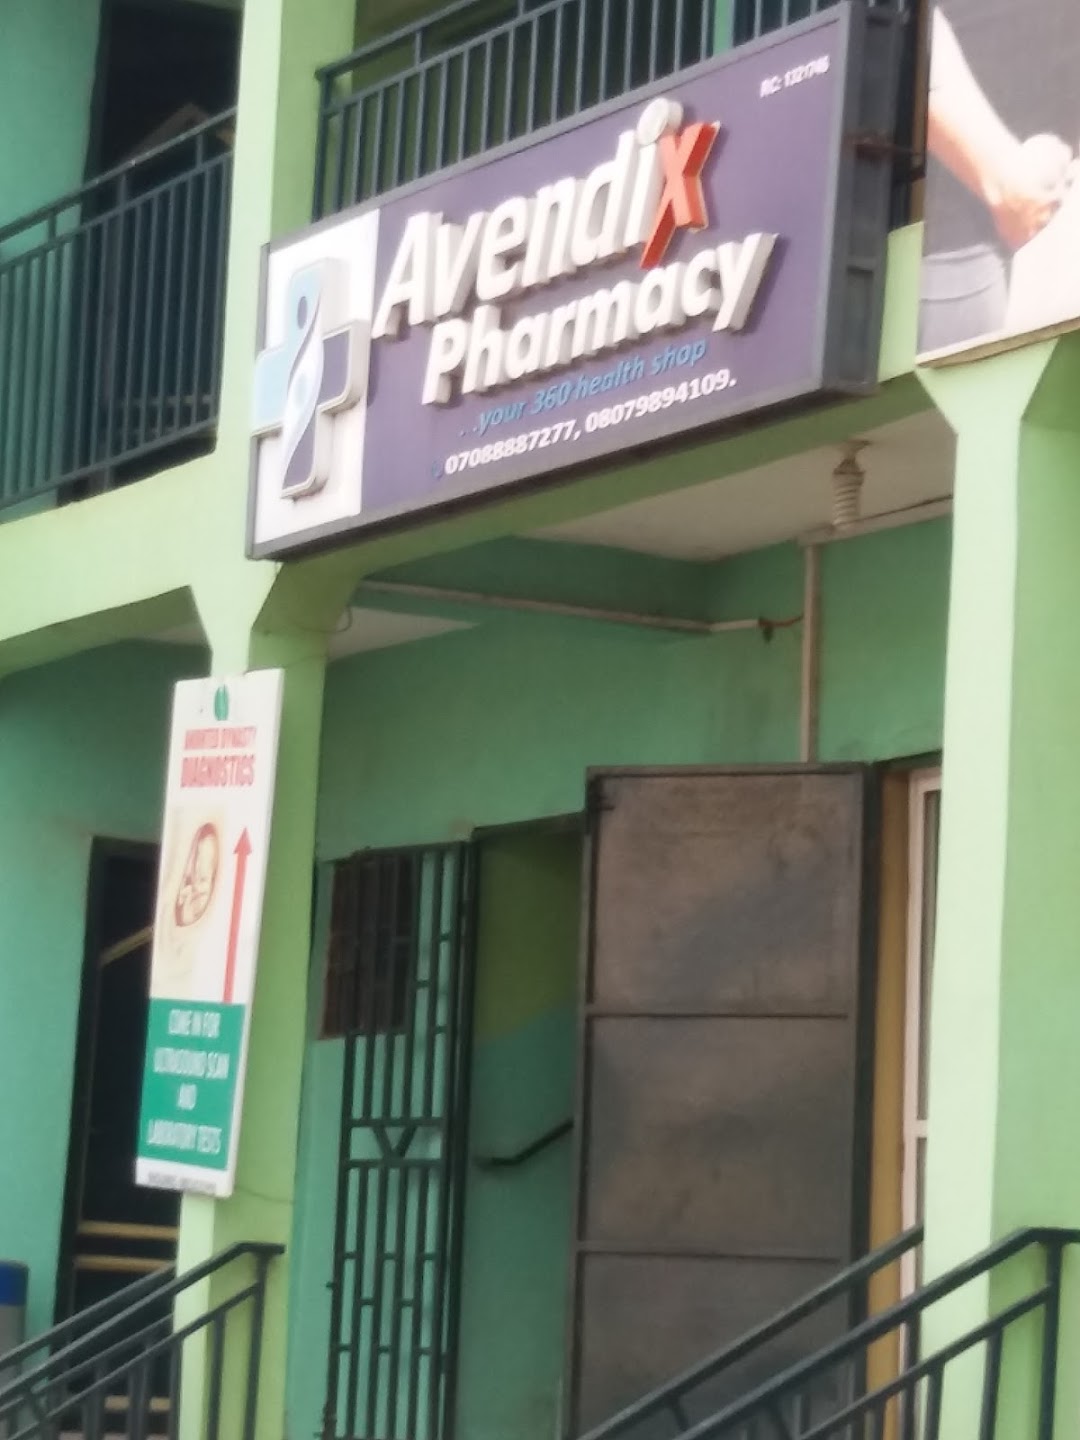 Avendix Pharmacy